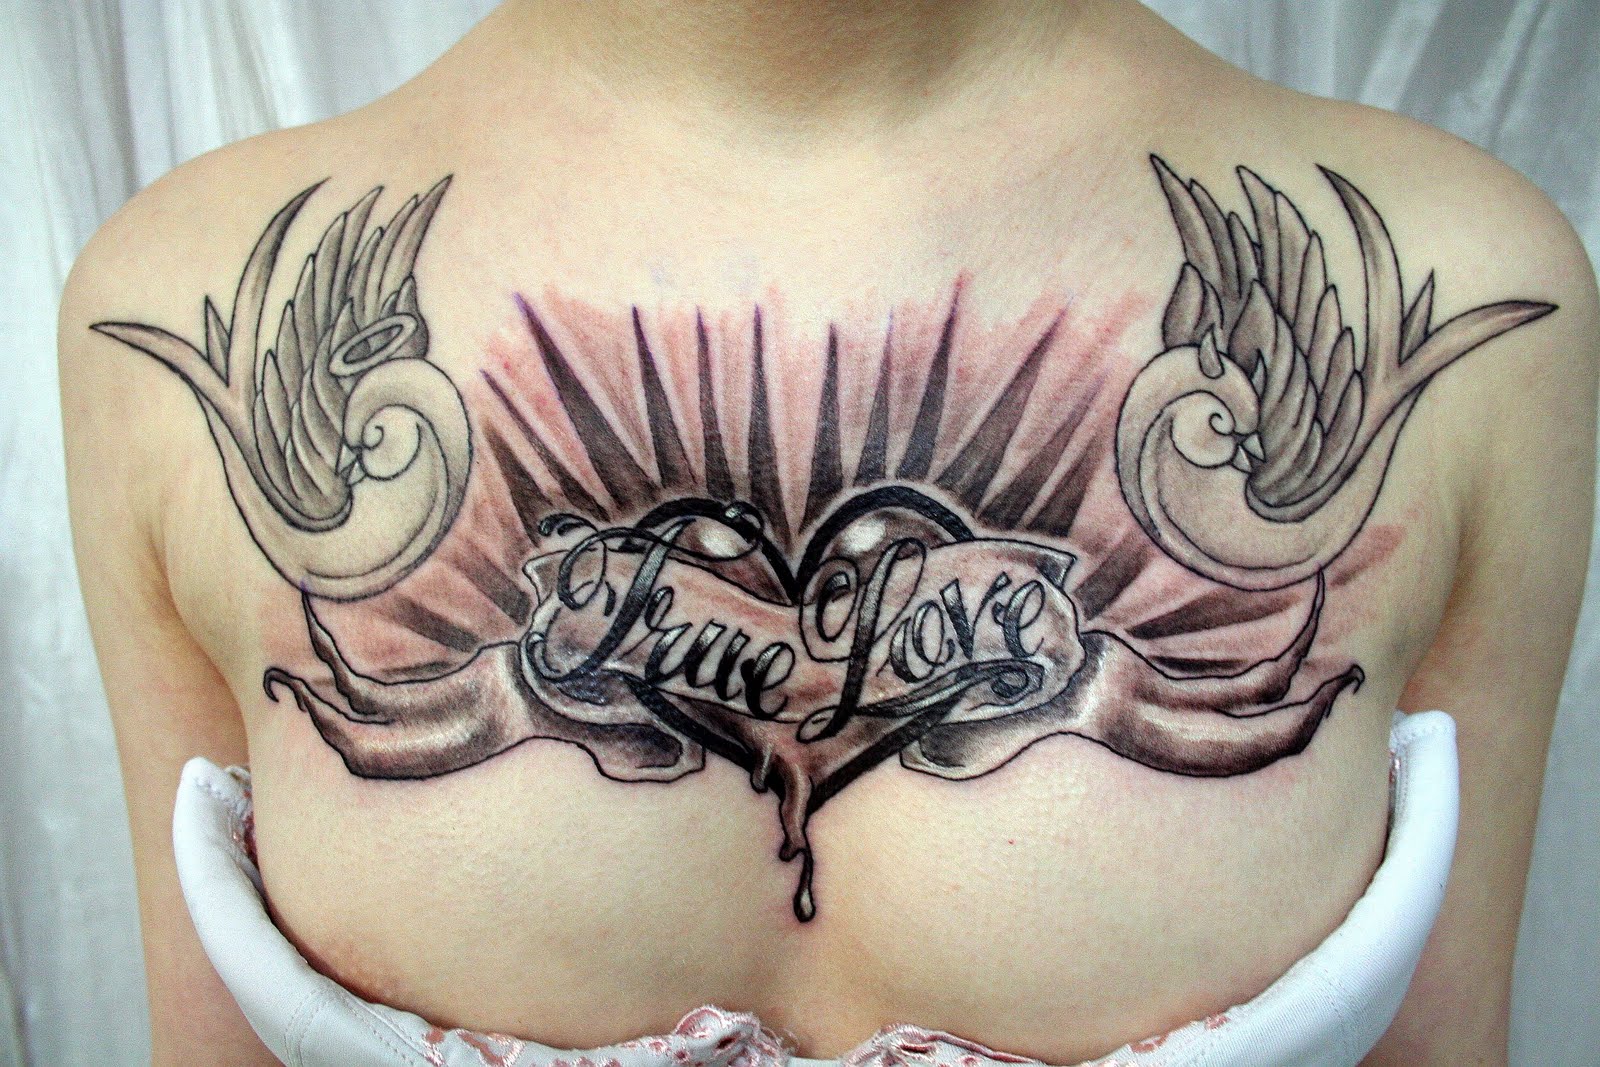 http://1.bp.blogspot.com/_yINadj0McKY/TUw6a7k_9OI/AAAAAAAAAhk/0XSYcXq0Bx4/s1600/cool-tattoo-trueloveletteringheartt.jpg?Cool_Tattoo_Designs_For_Men